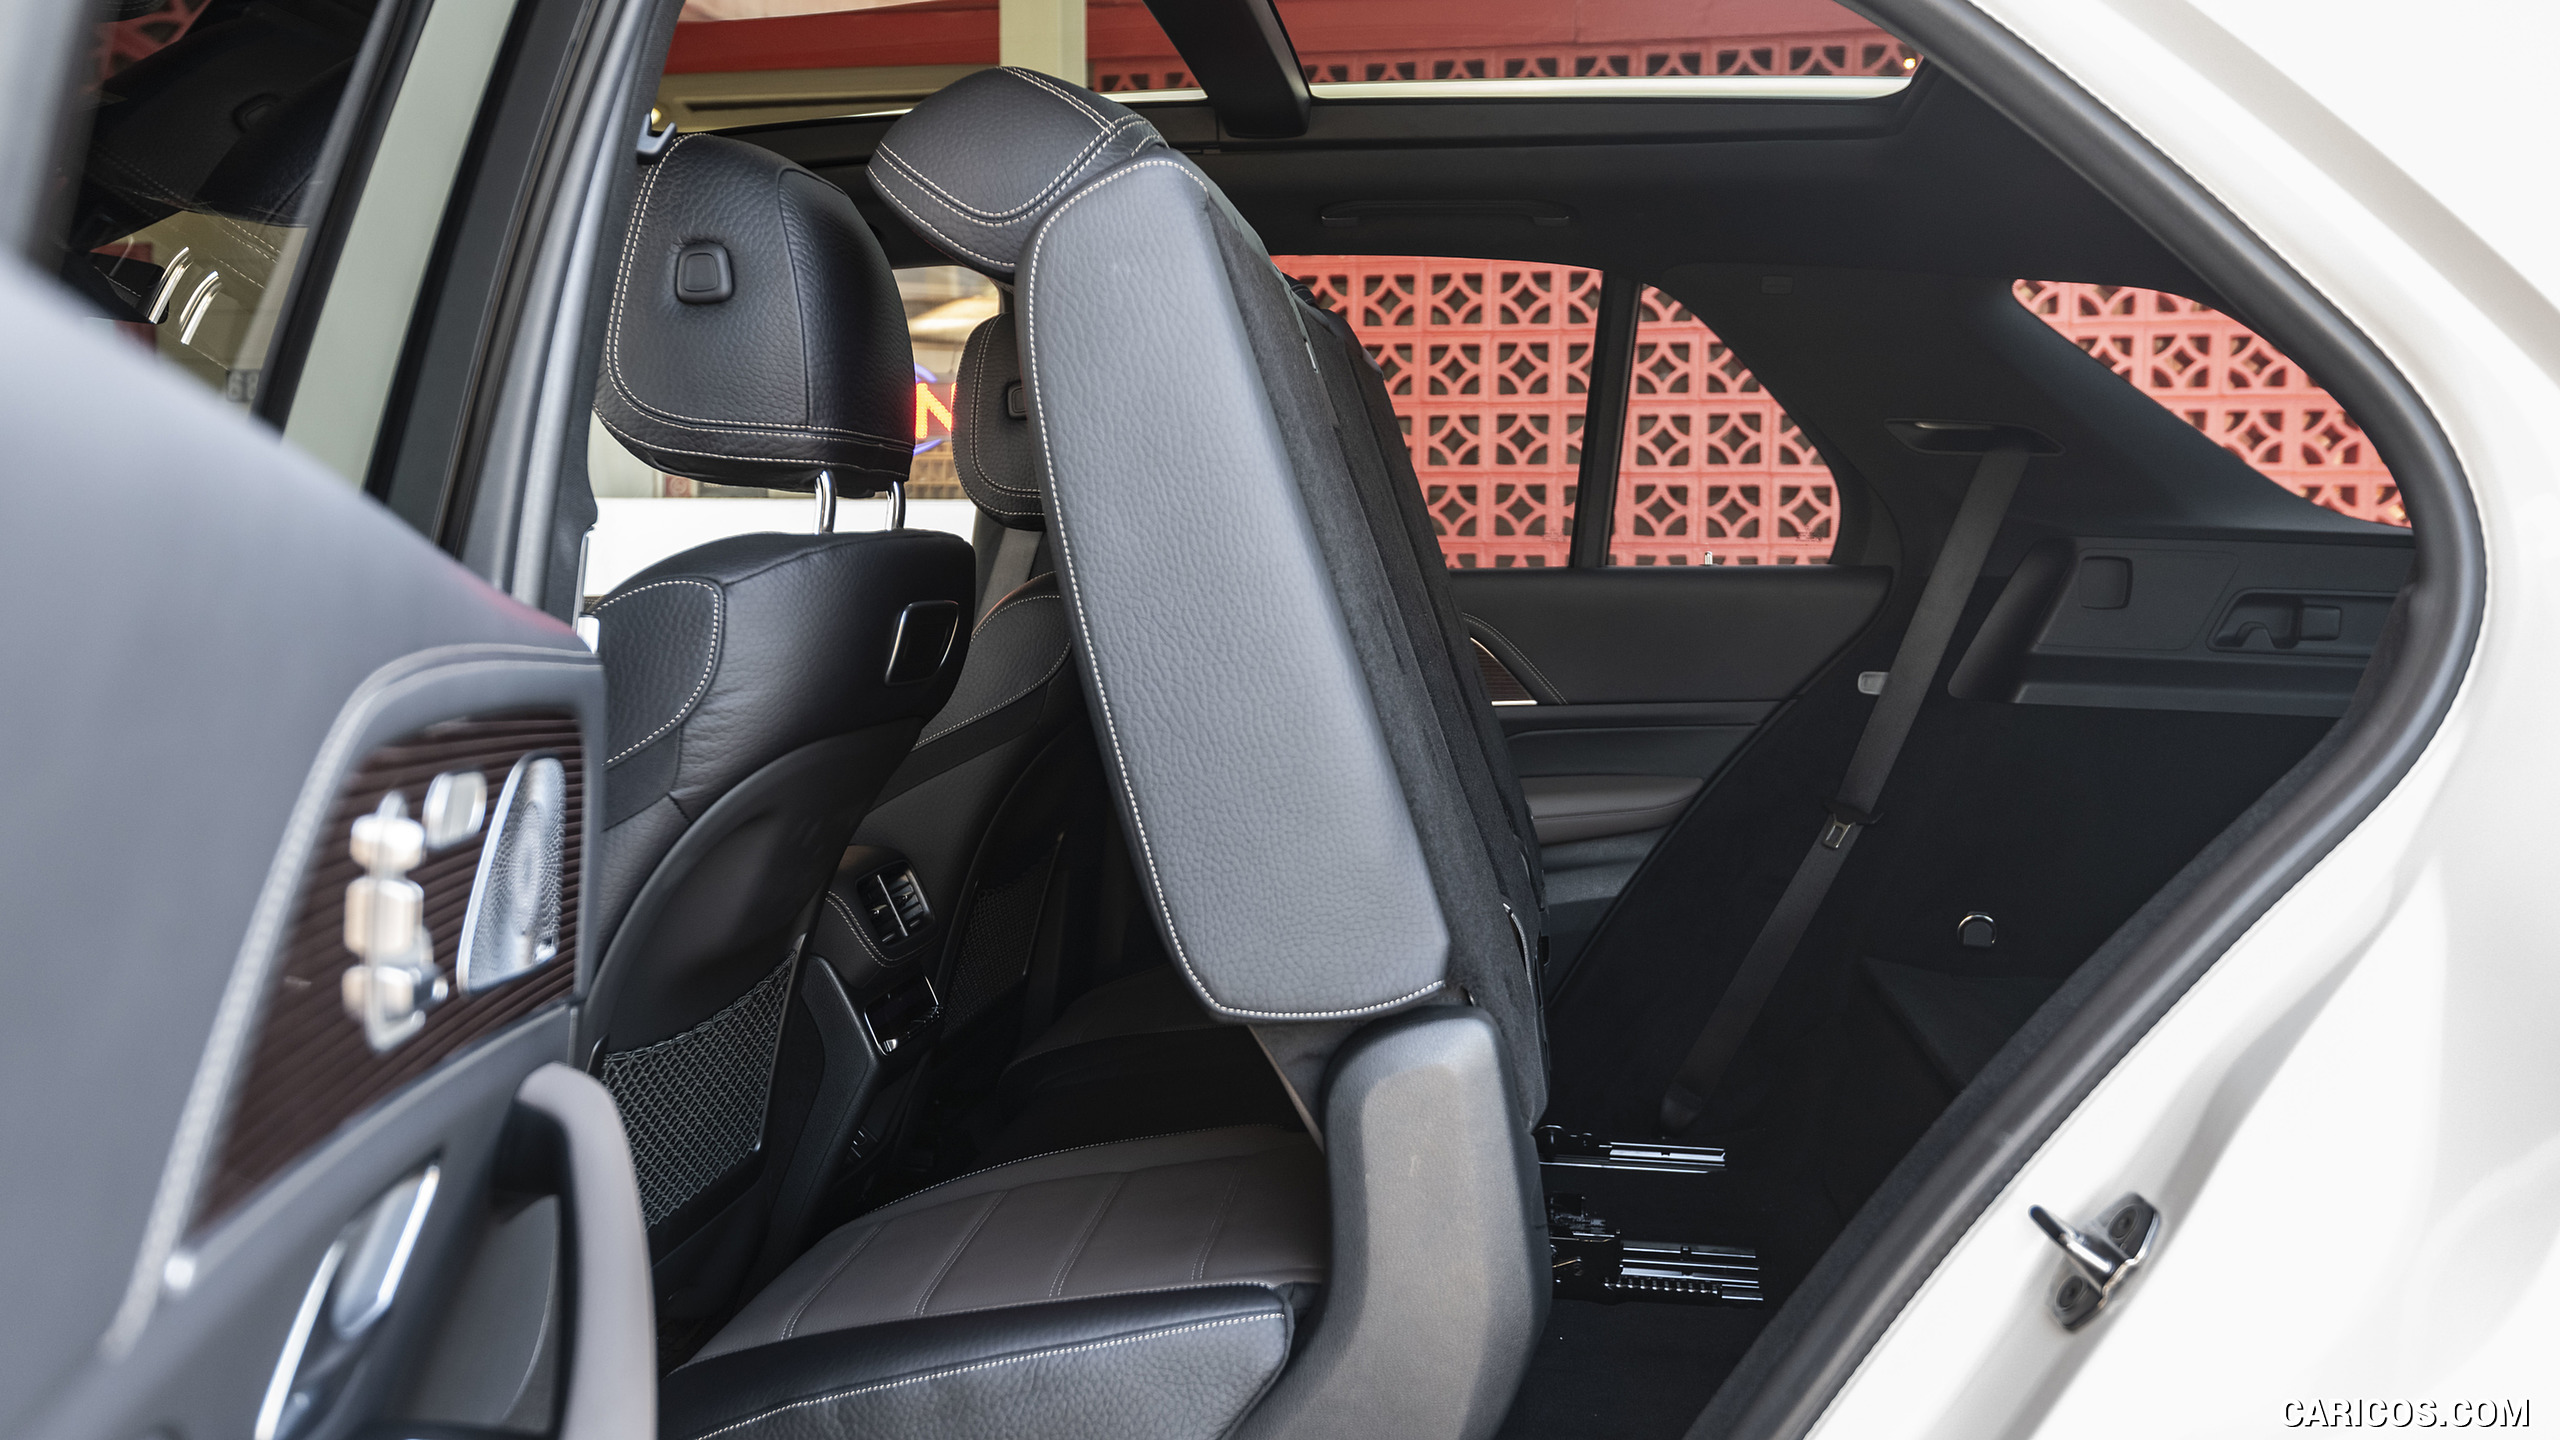 2020 Mercedes-Benz GLE 450 4MATIC (Color: Designo Diamond White Bright; US-Spec) - Interior, Rear Seats, #169 of 358